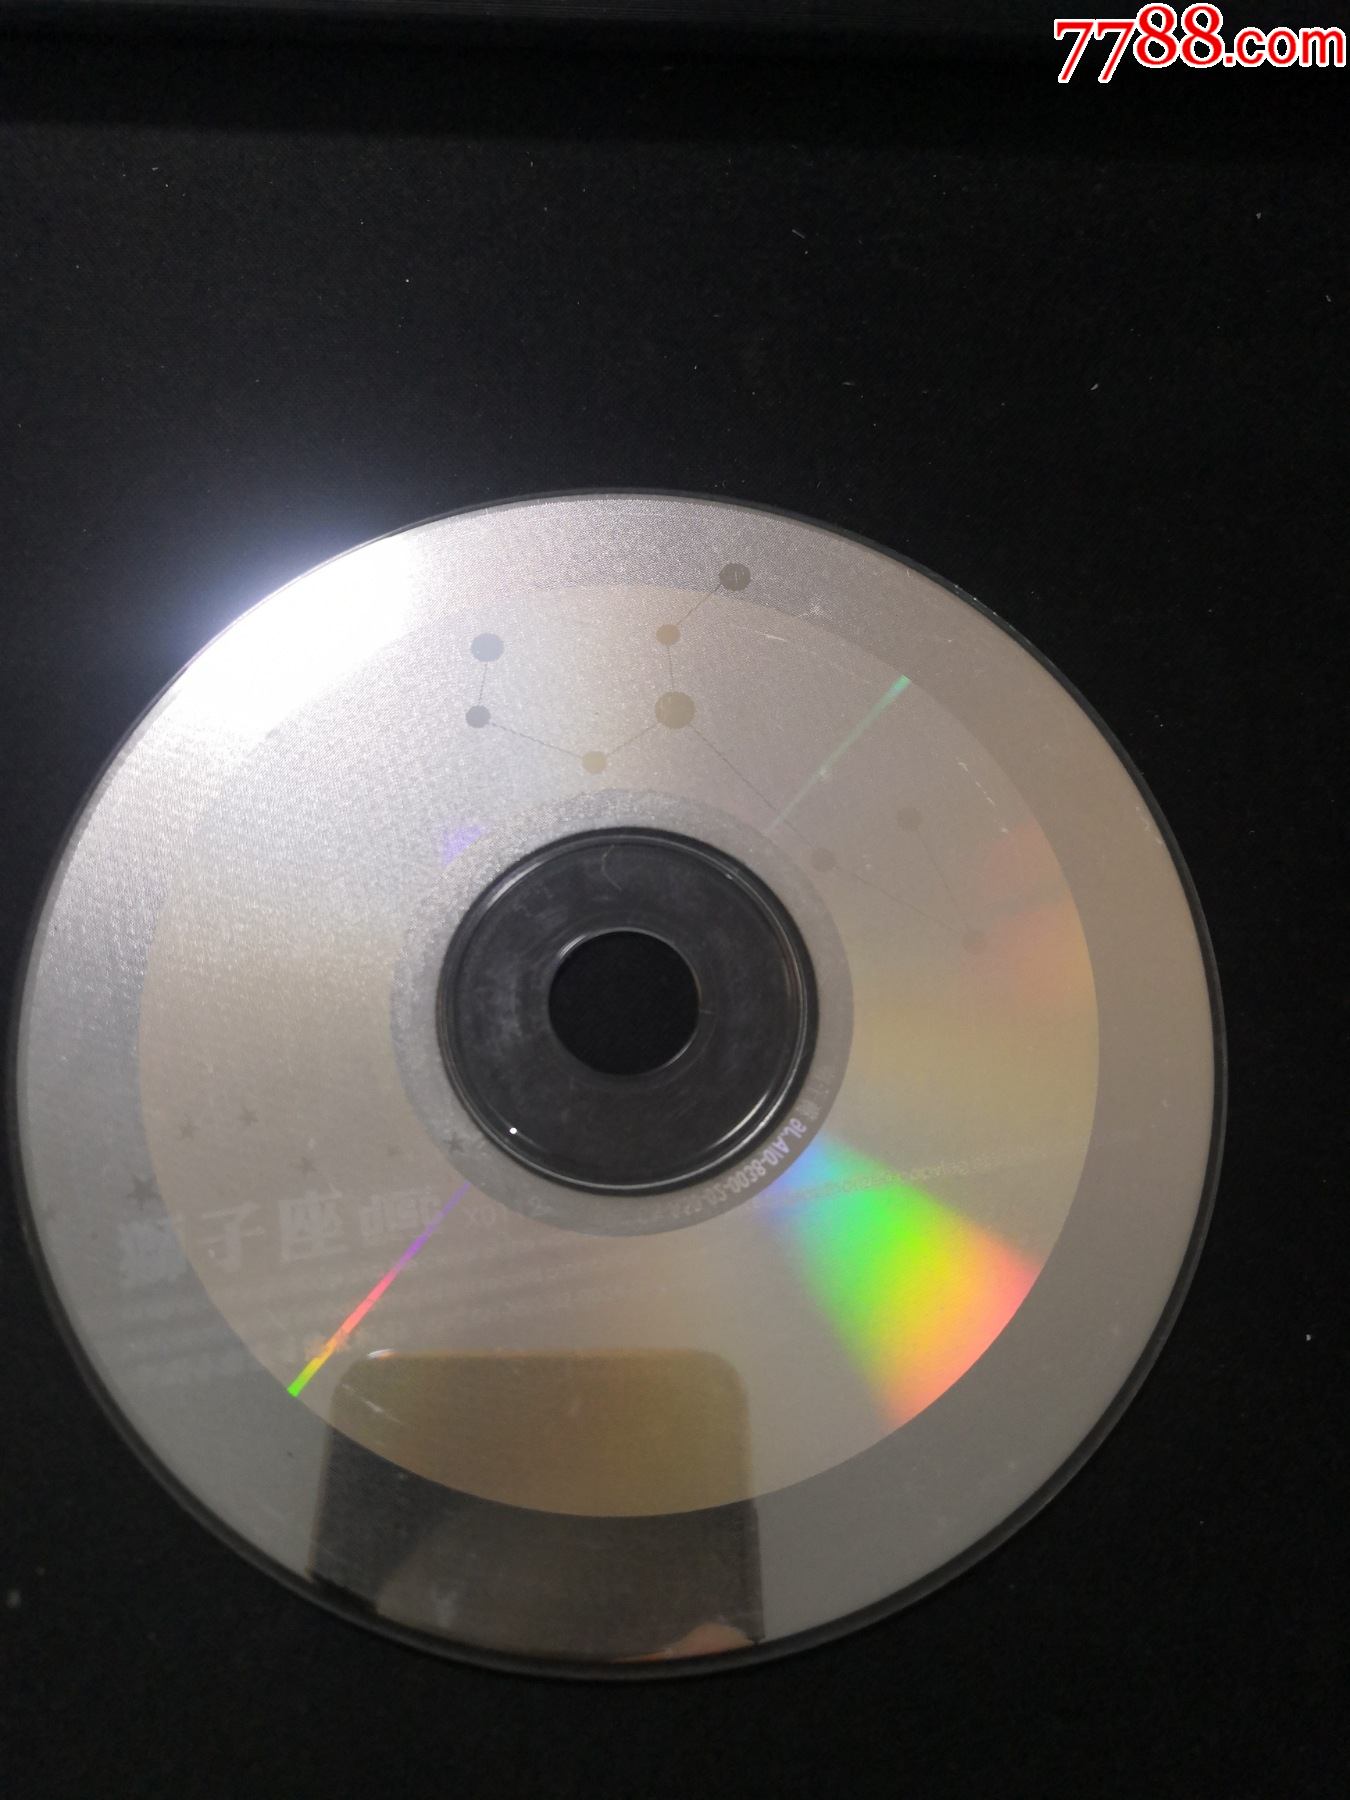 狮子座cd裸盘